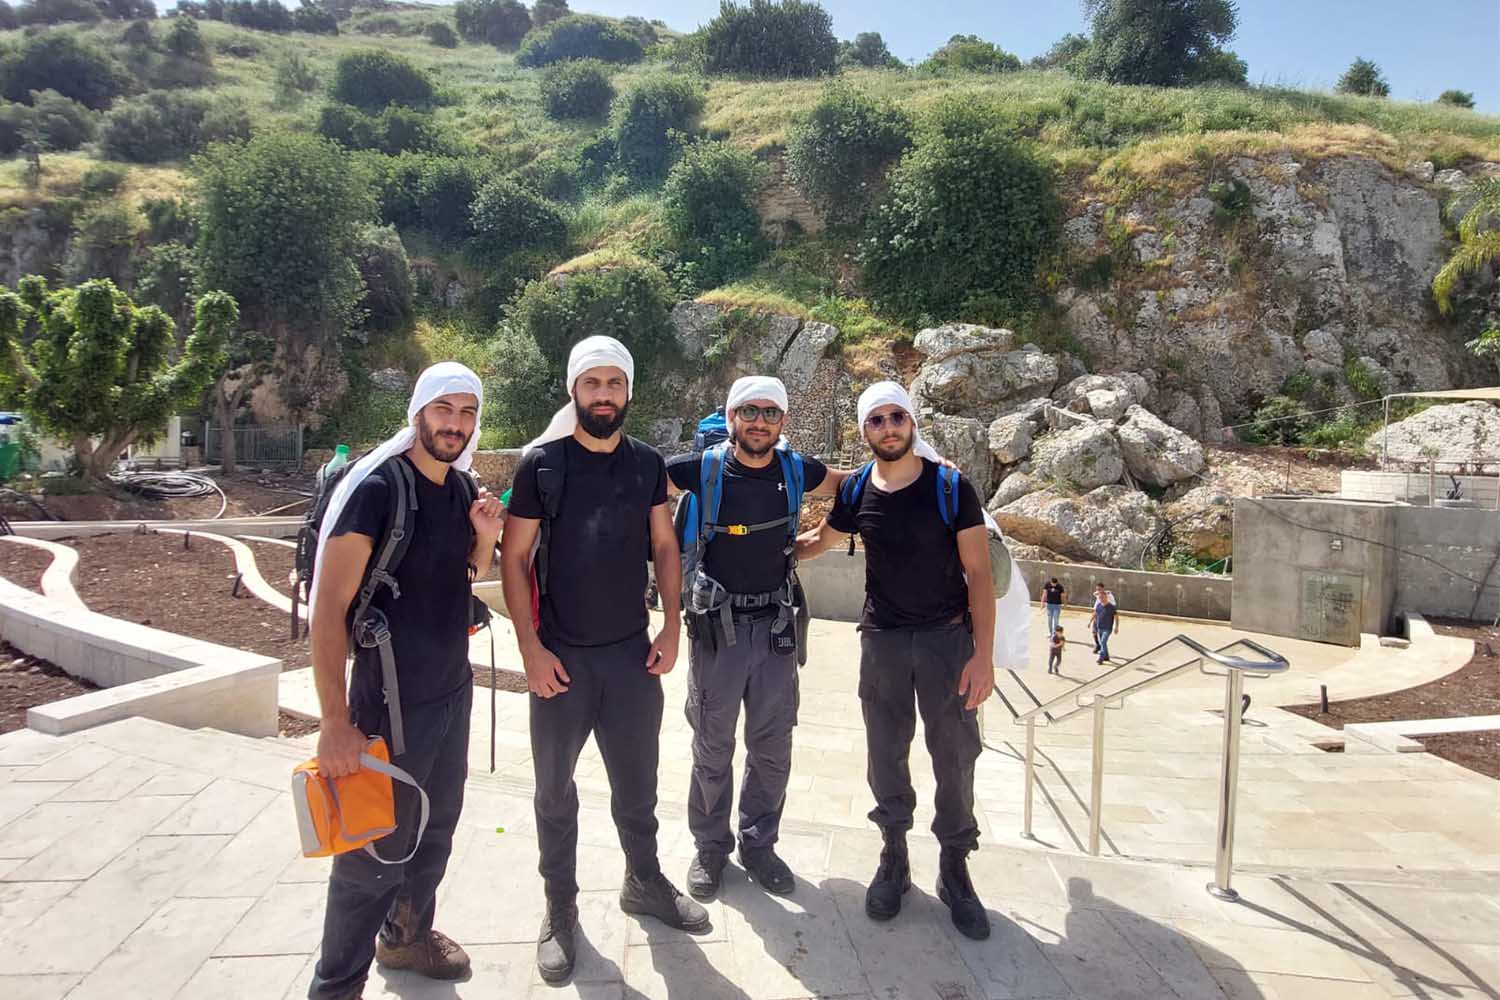 الشباب الأربعة الذين قاموا بزيارة مقام النبي شعيب (تصوير: مور هوفرط)